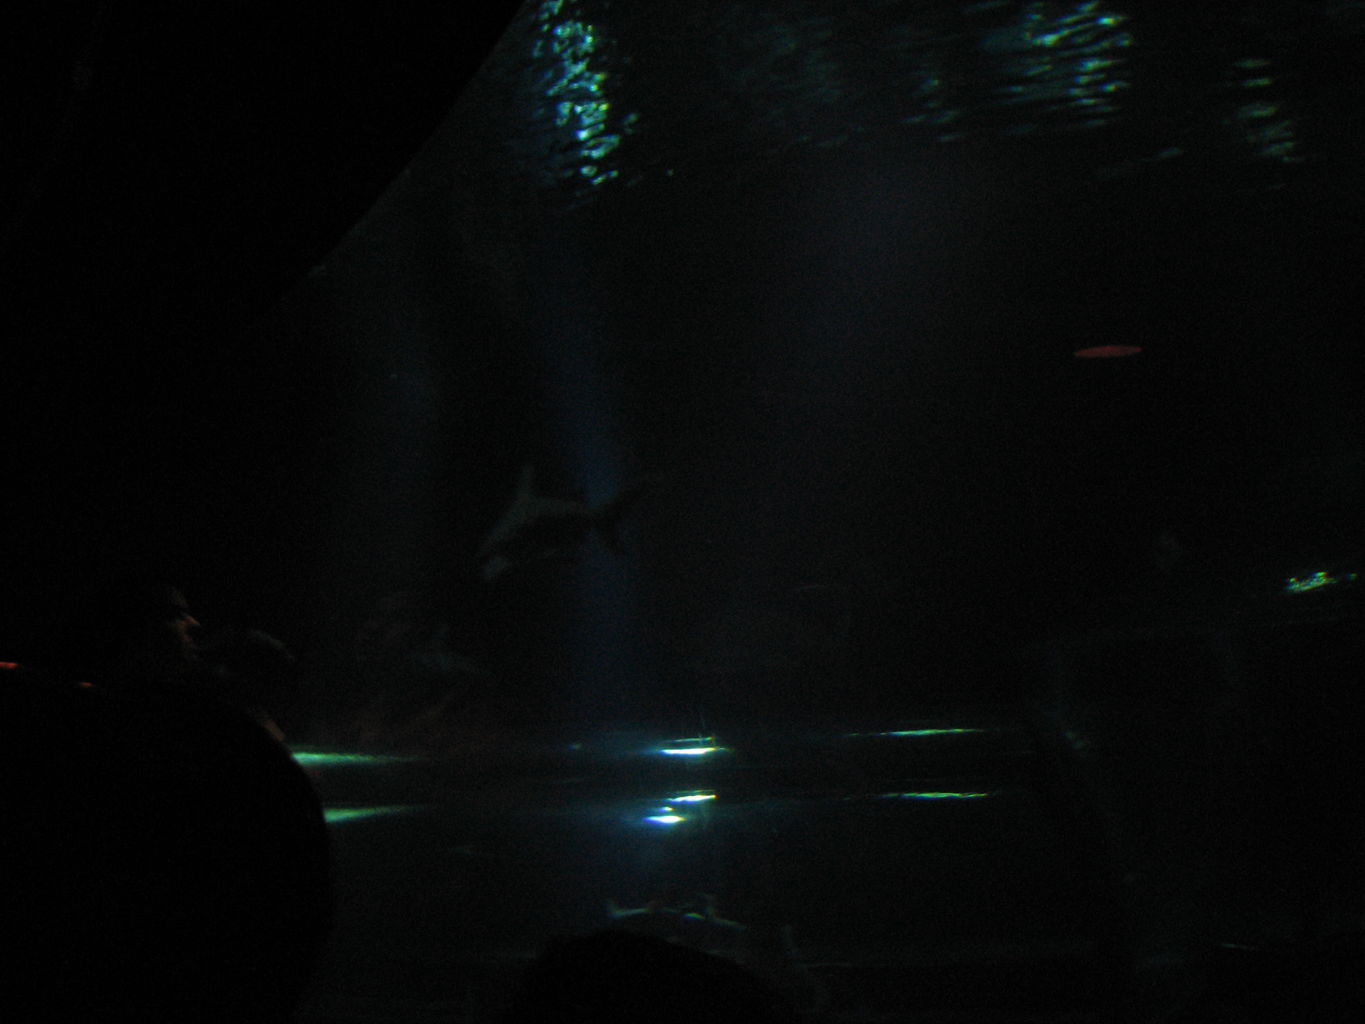 Oklahoma Aquarium